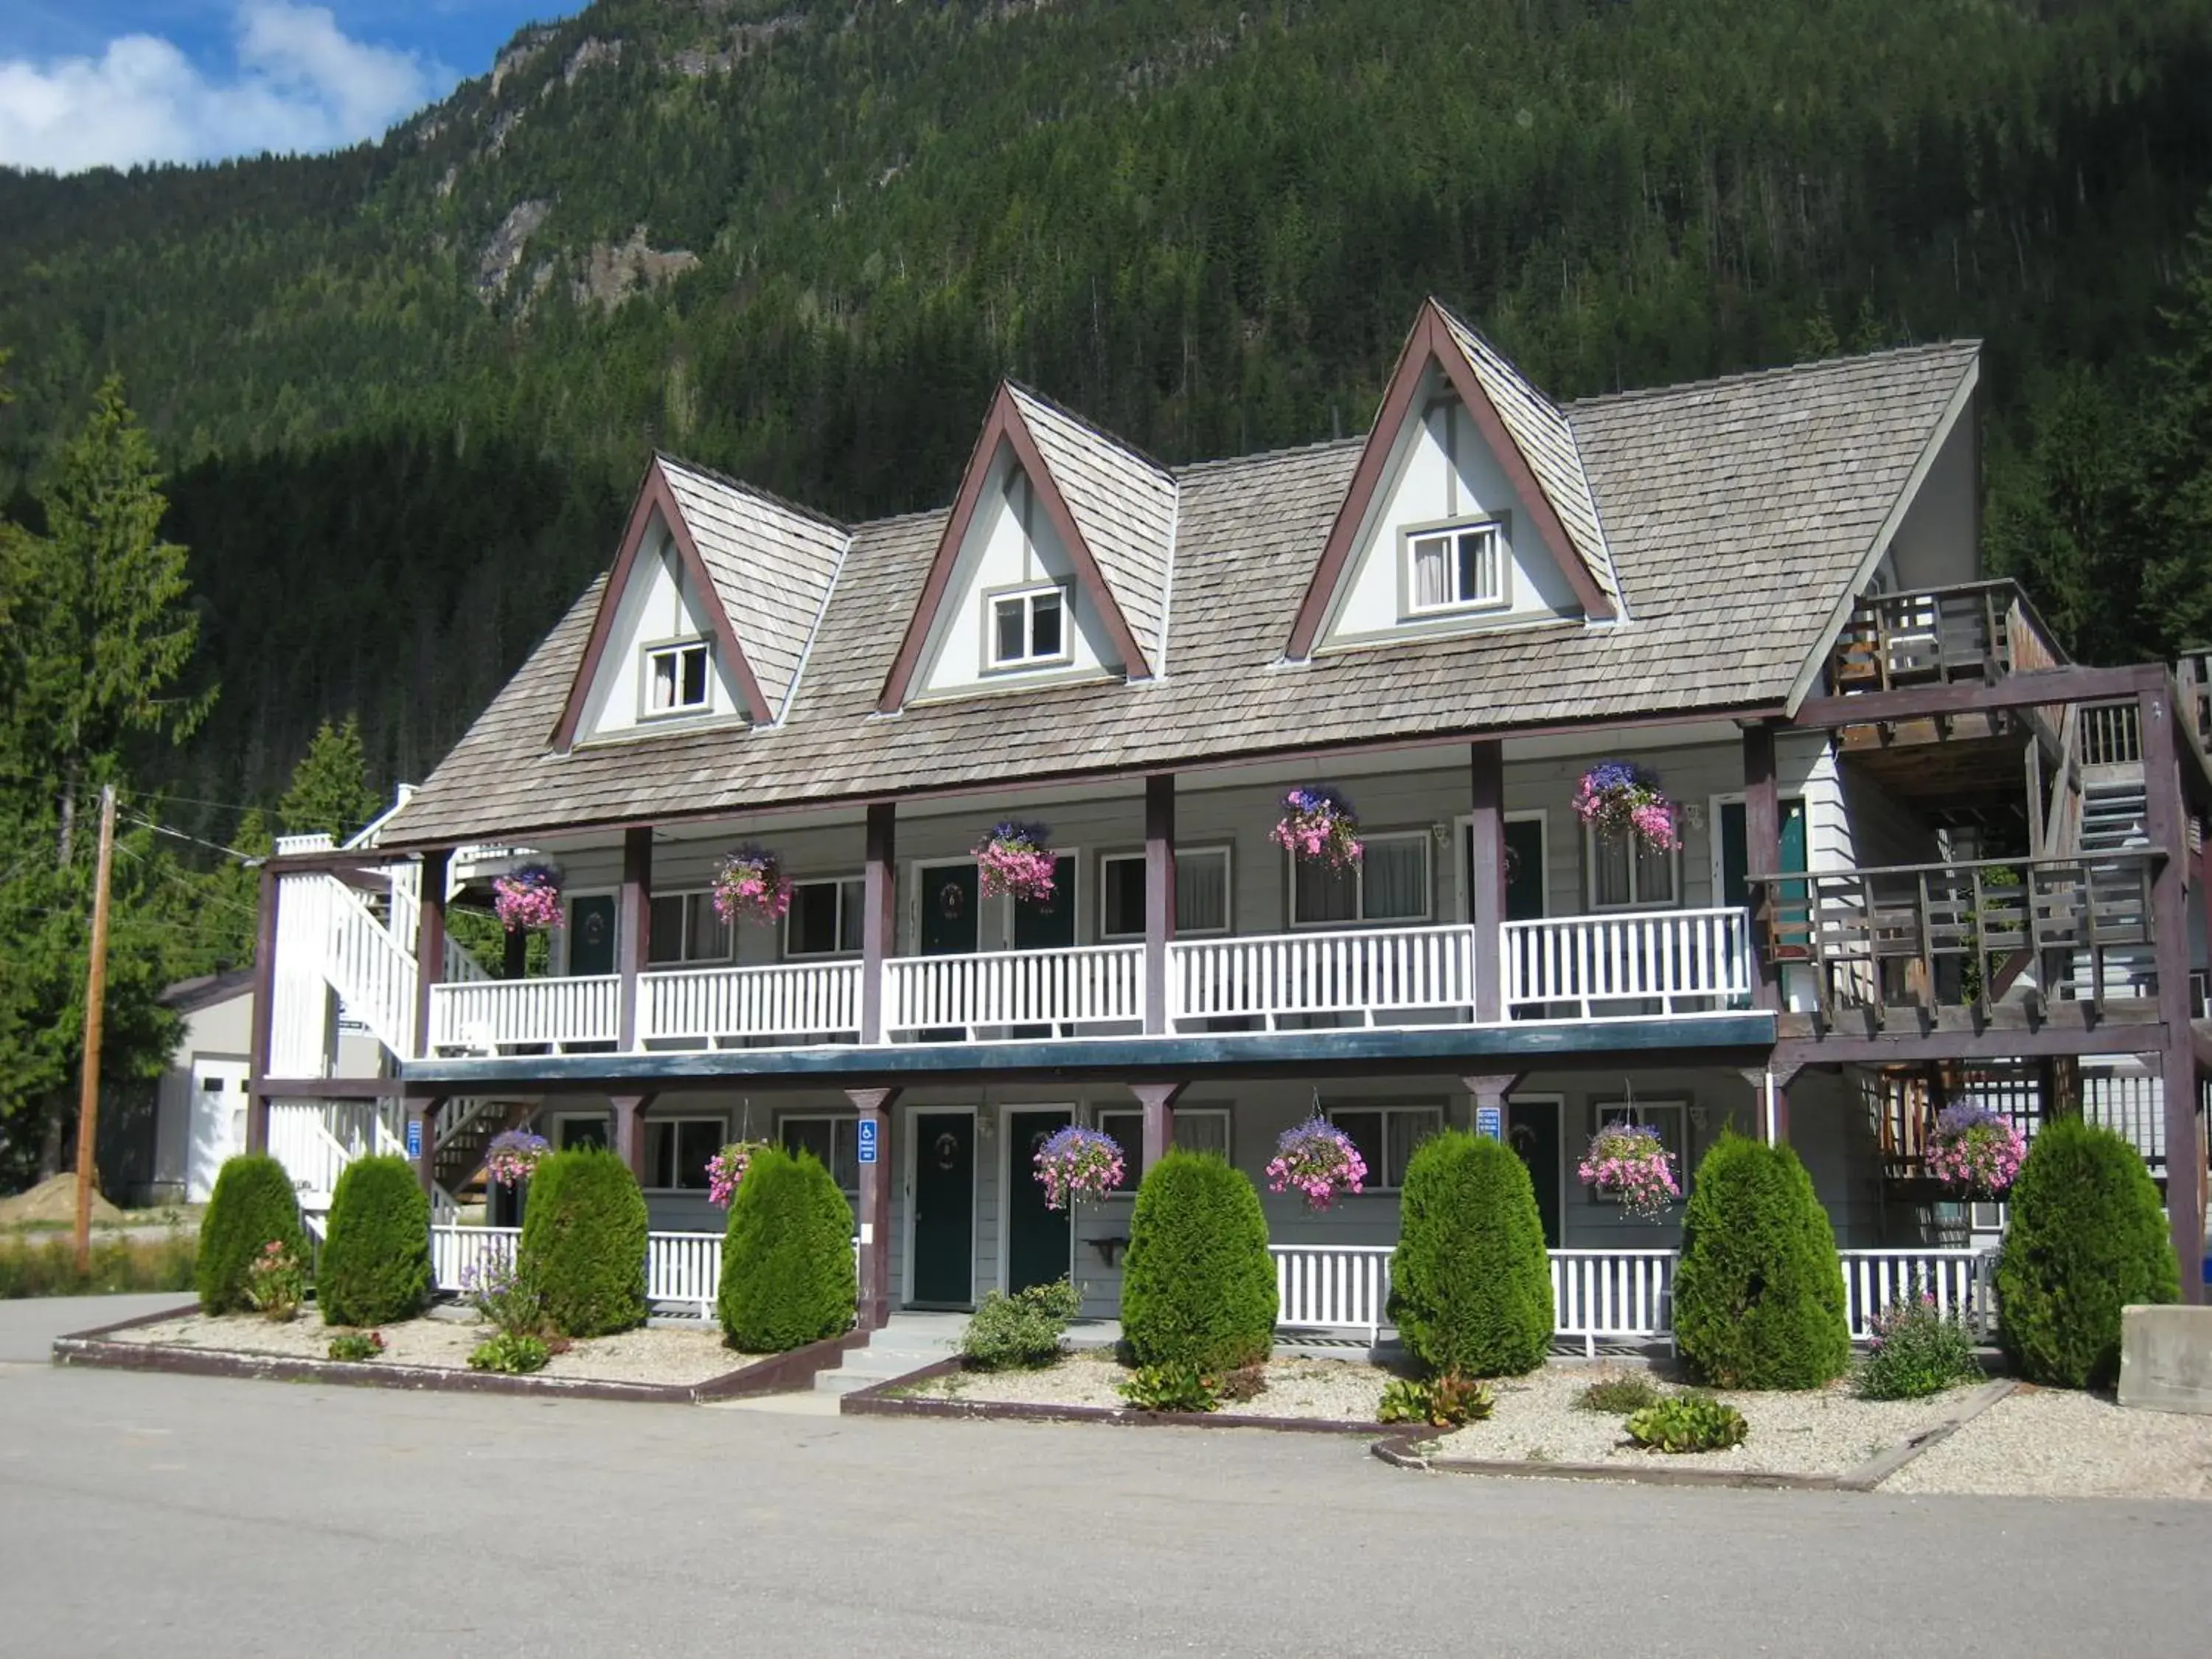 Property Building in Peaks Lodge